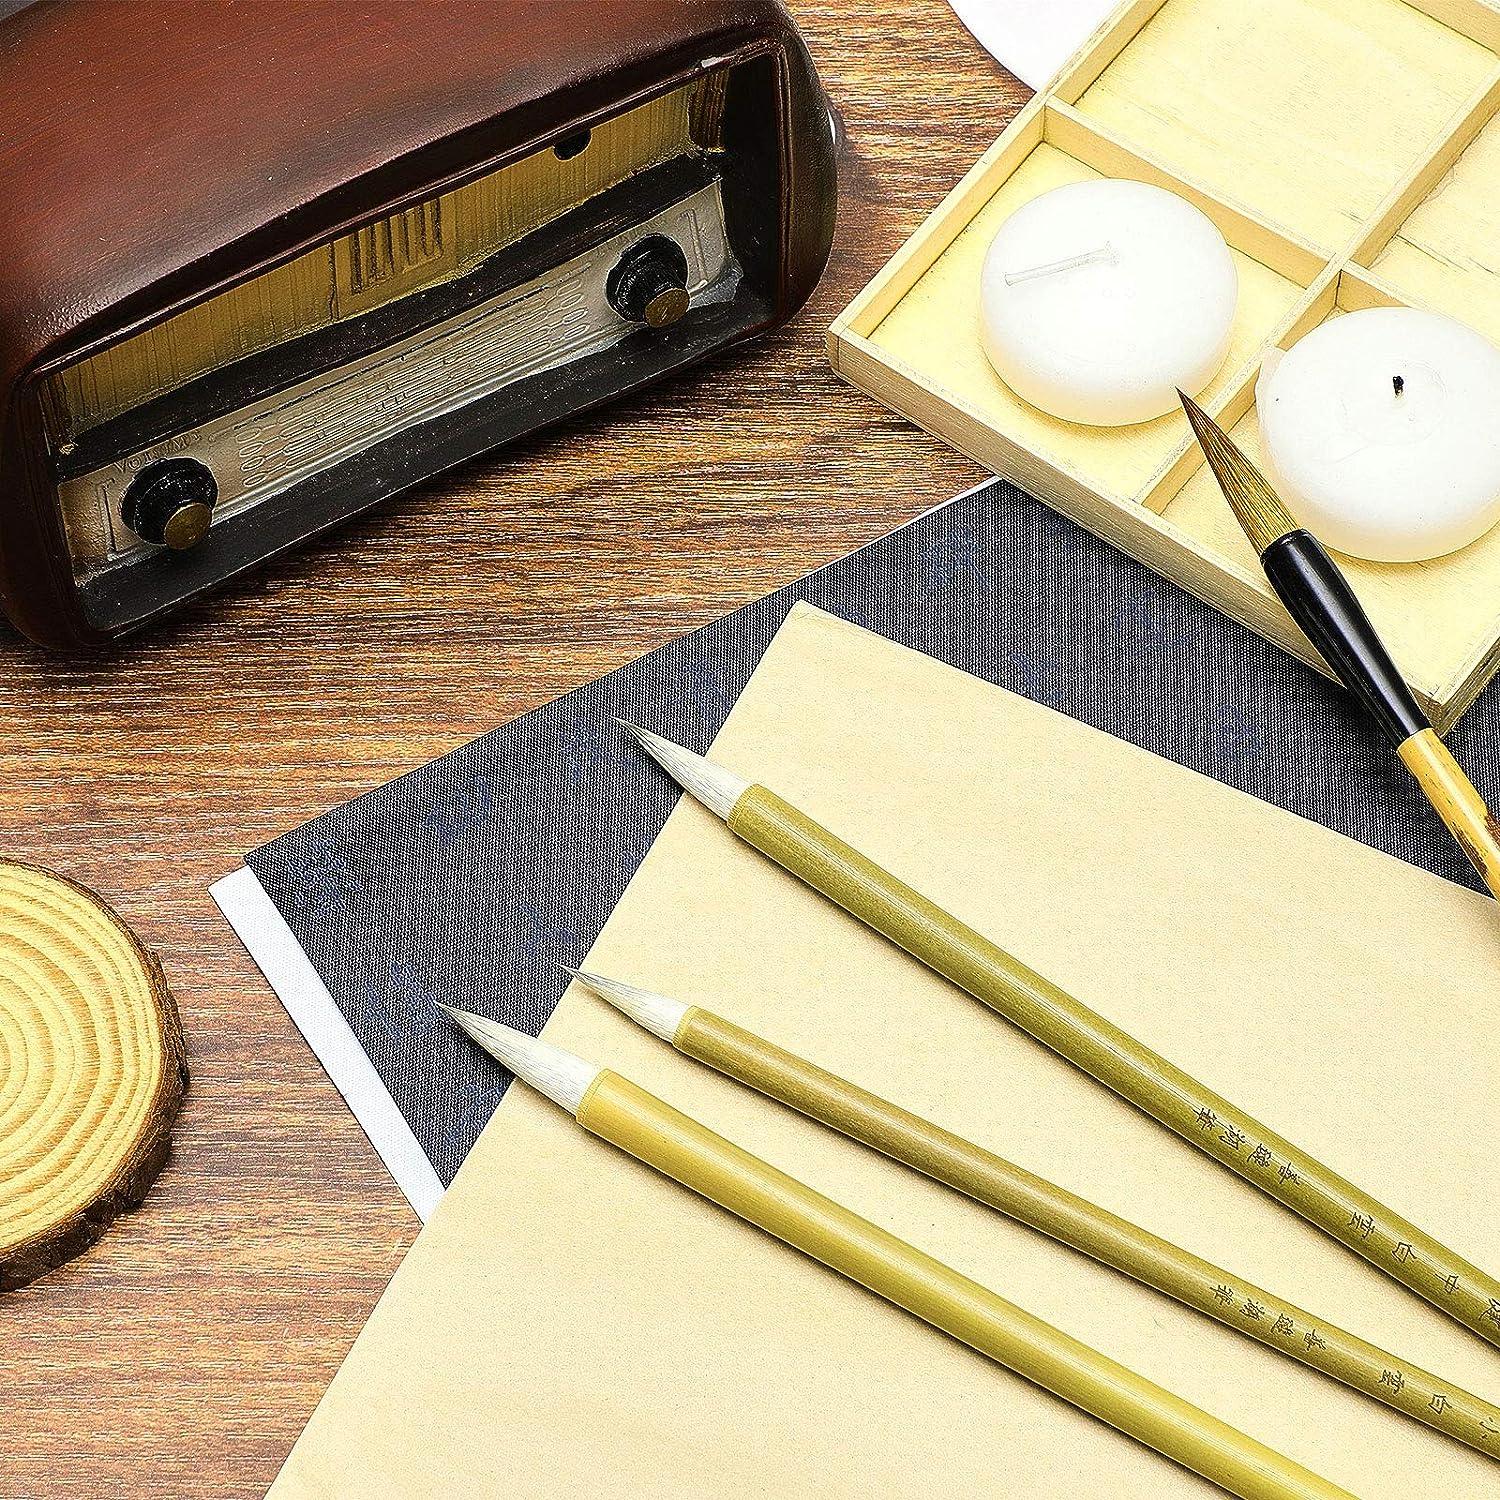 11 Pcs Chinese Calligraphy Brushes Set Japanese Style Sumi Painting Drawing  Brushes Writing Brush Kanji Art Brush with Roll up Bamboo Brush Holder